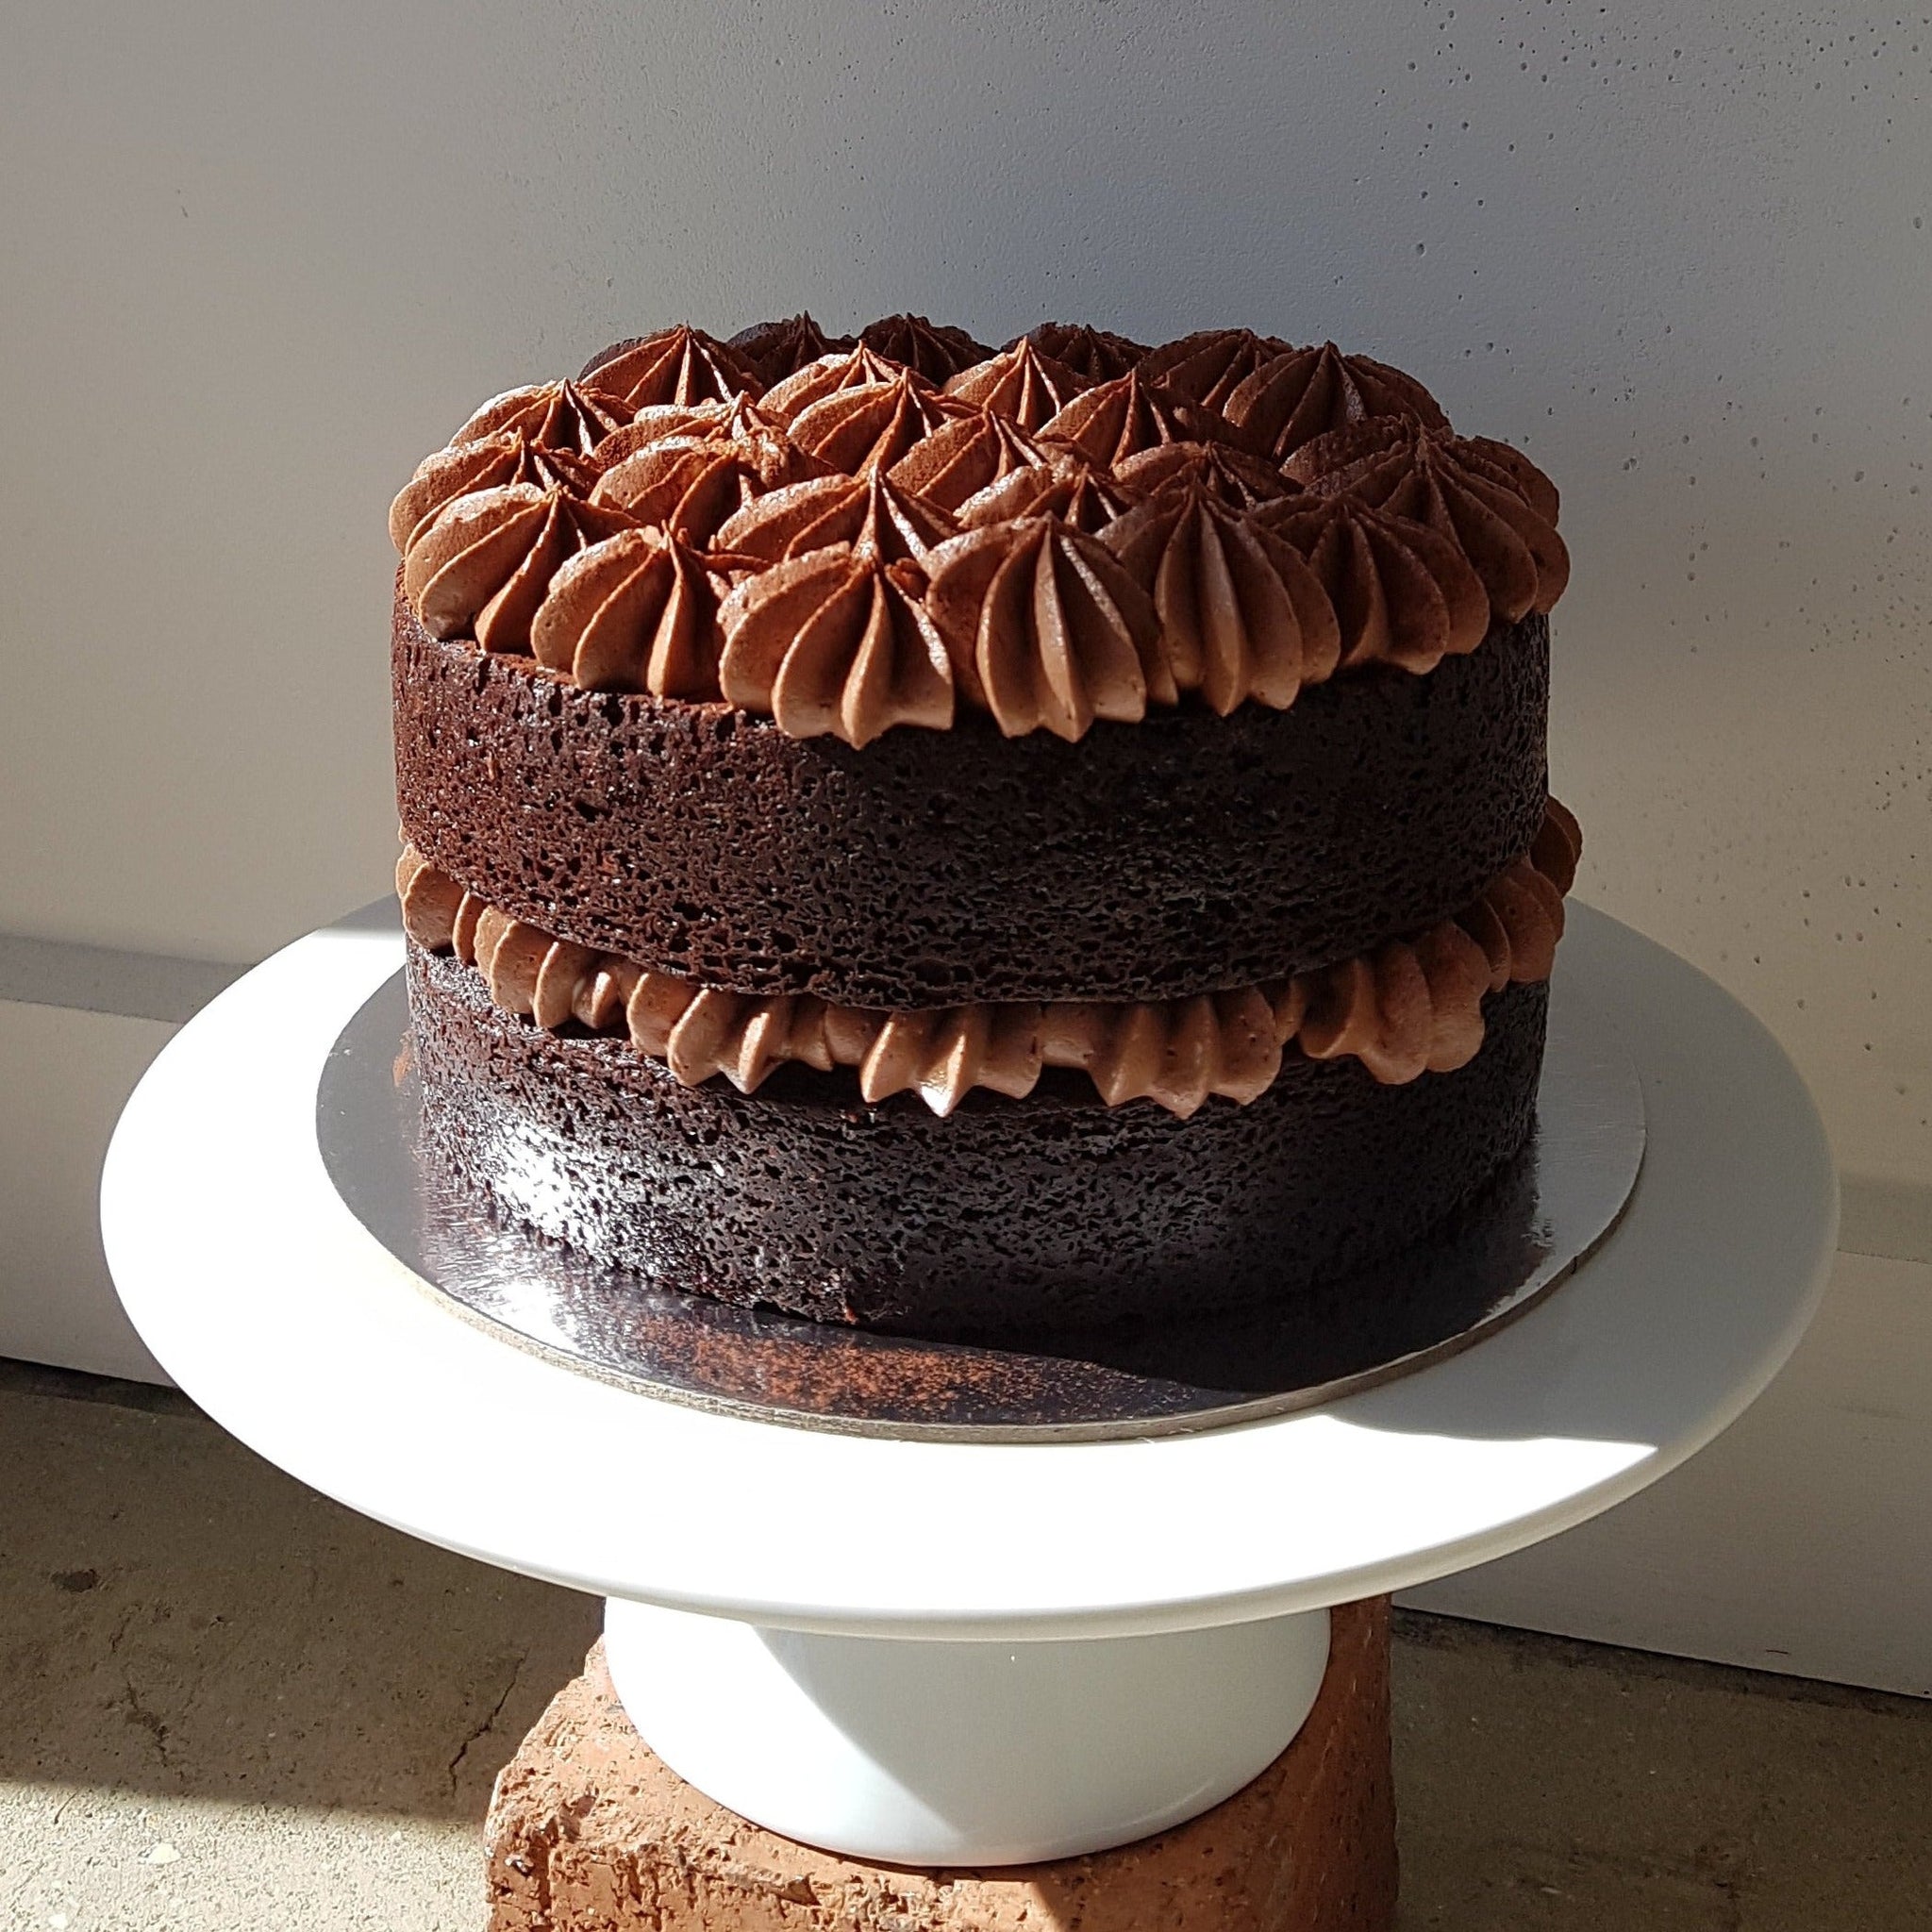 Chocolate Stout cake